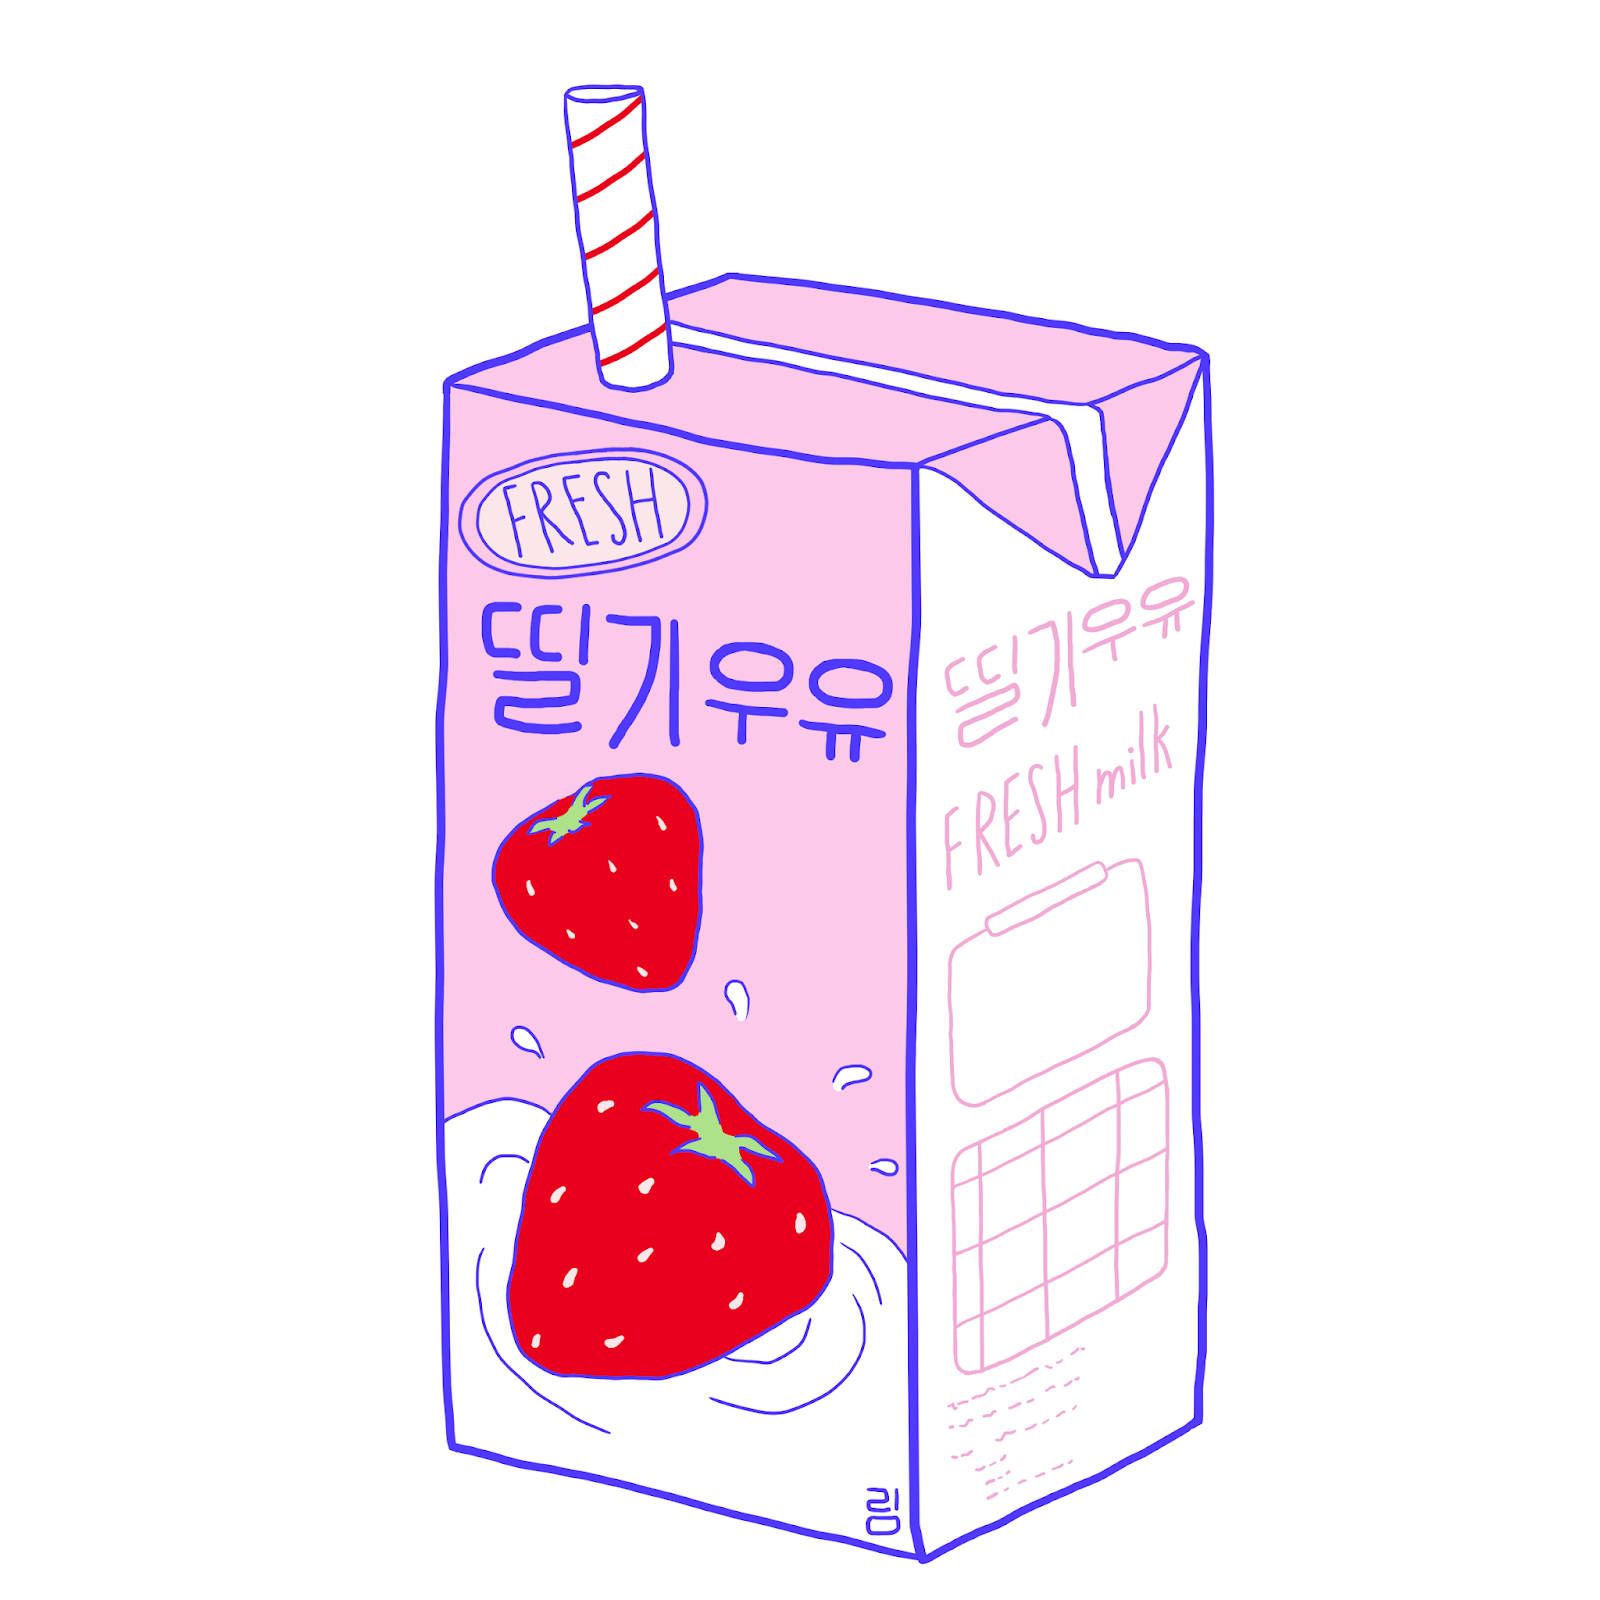 Billede et glas forfriskende jordbæromlk Wallpaper